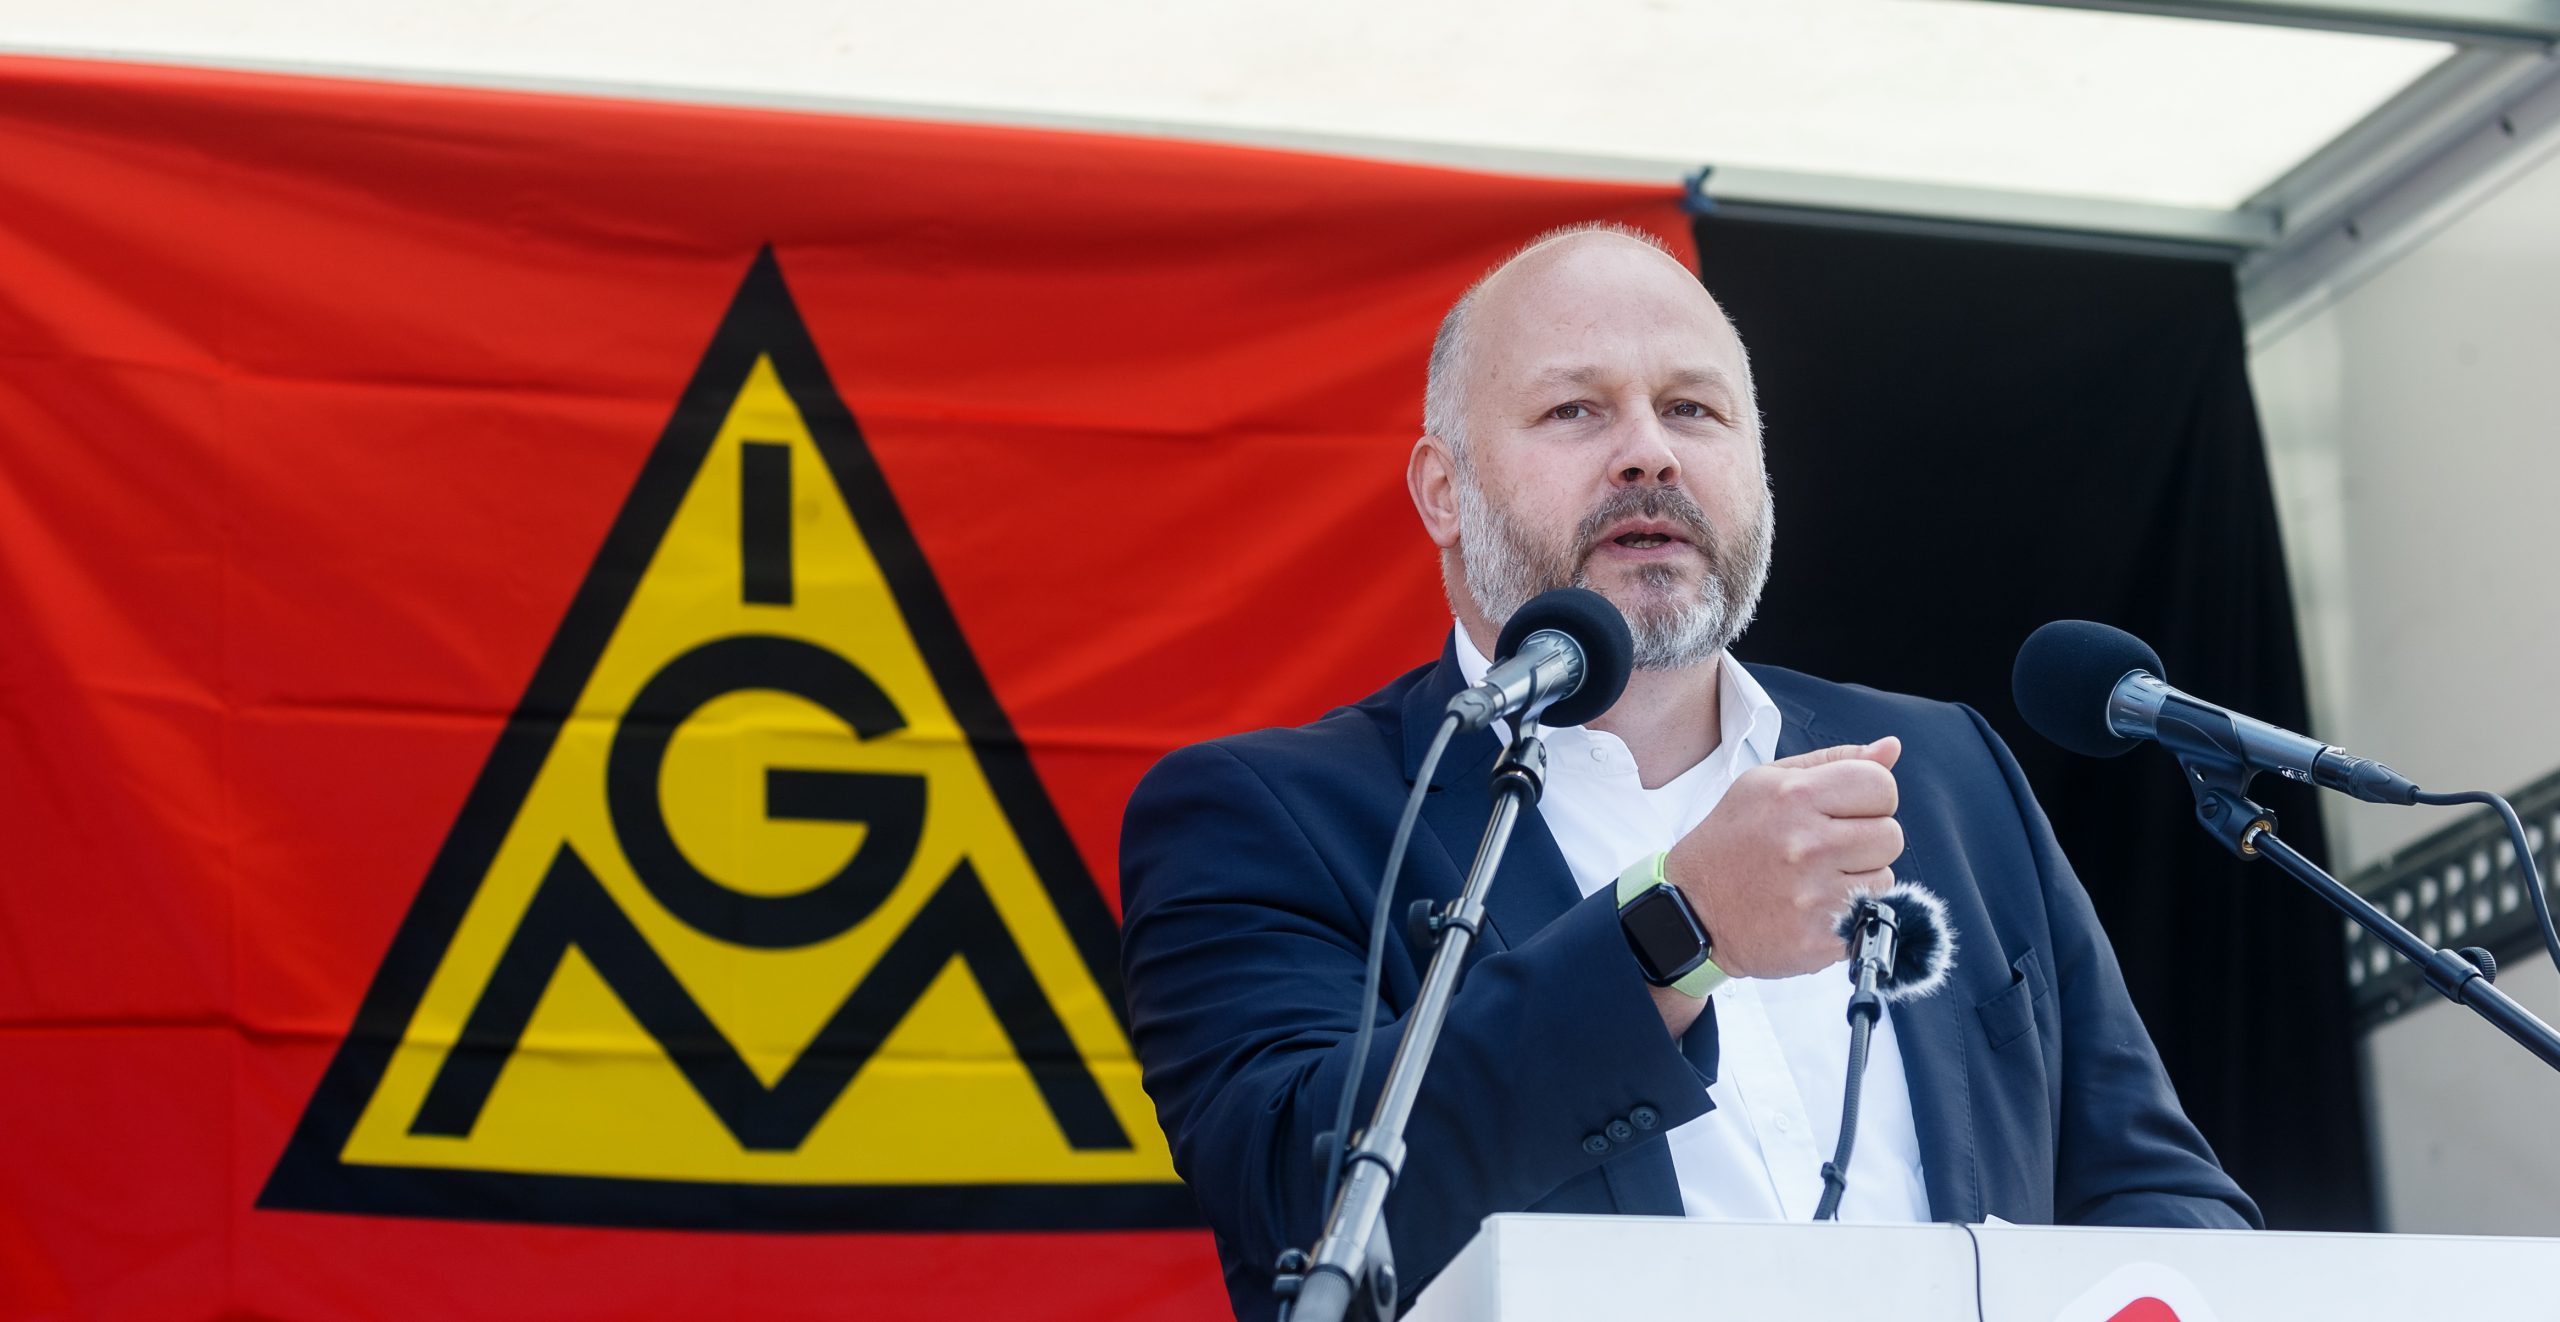 Daniel Friedrich, Bezirksleiter der IG Metall Küste, spricht bei einem Warnstreik vor dem Werk von Airbus in Hamburg-Finkenwerder.